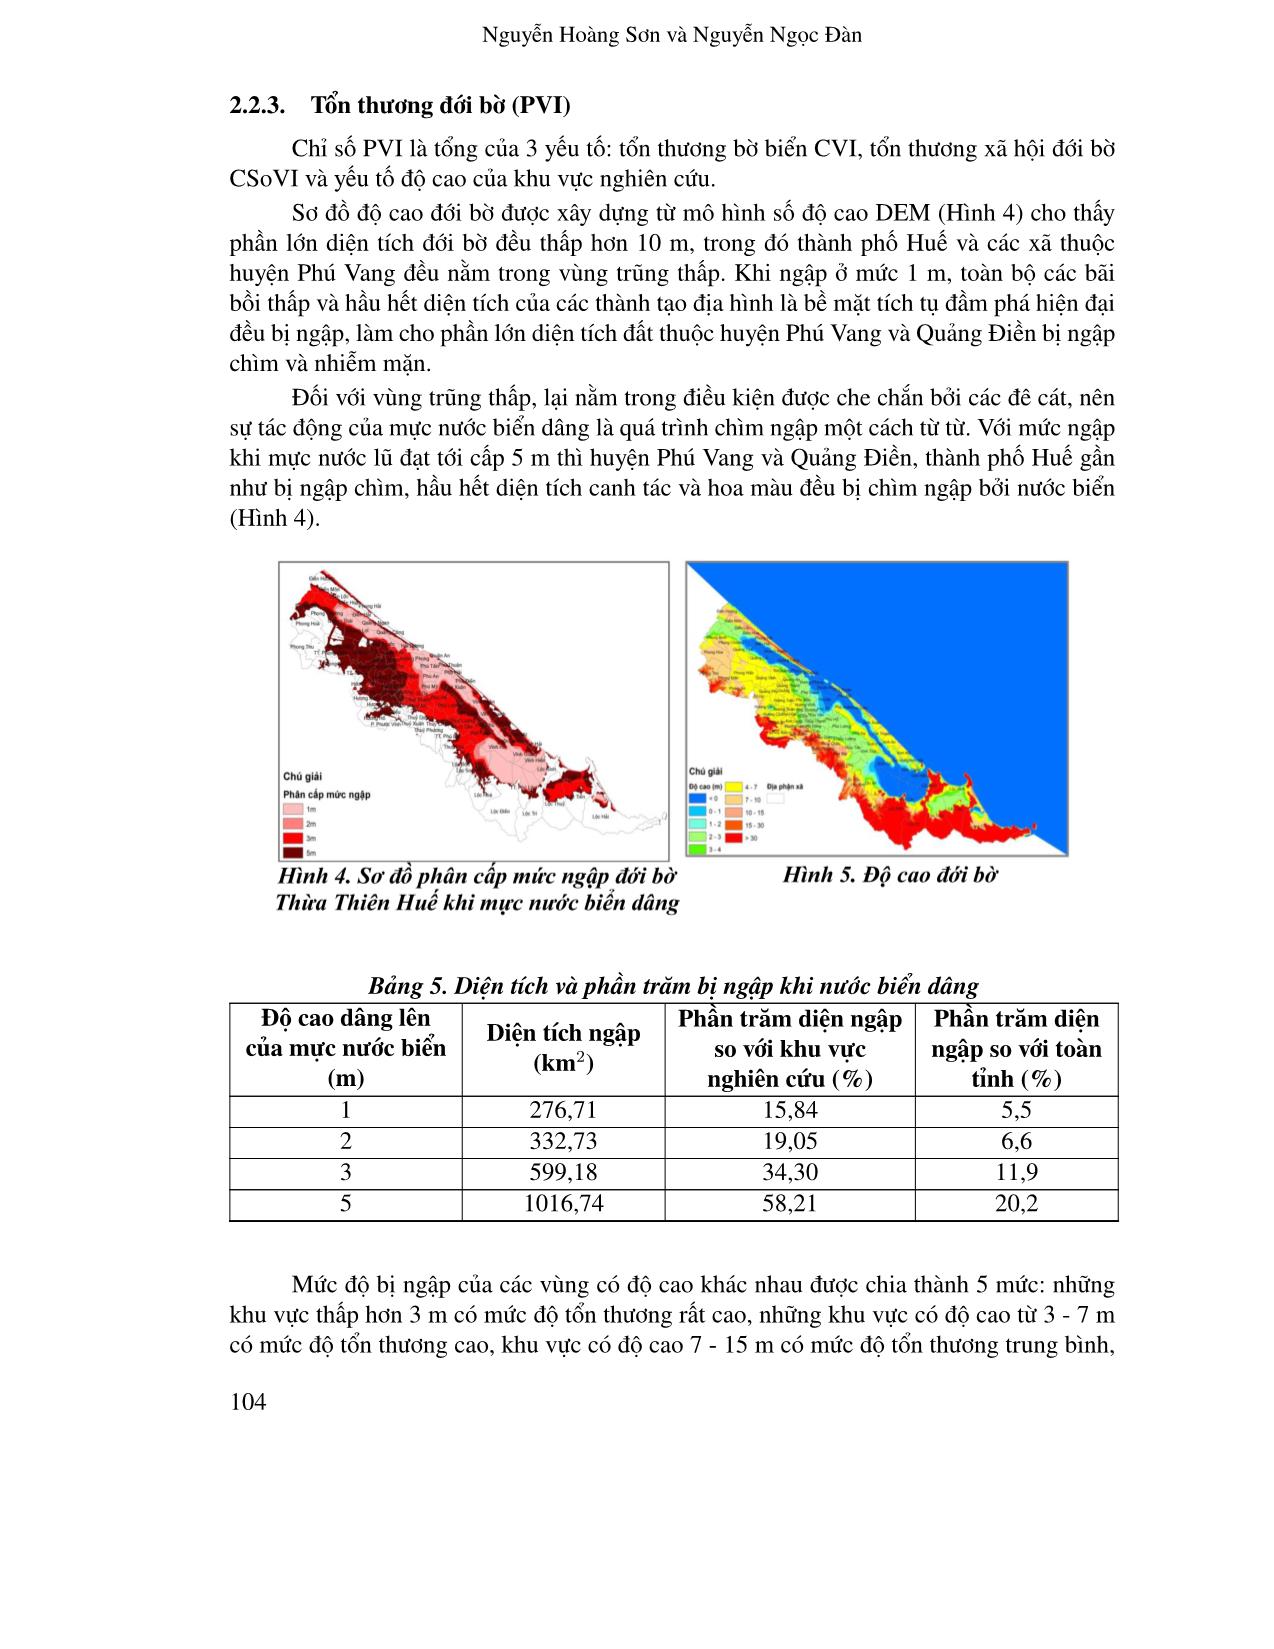 Ứng dụng GIS viễn thám và chỉ số tổn thương bờ biển nhằm đánh giá nguy cơ tổn thương đới bờ tỉnh Thừa Thiên Huế dưới ảnh hưởng của nước biển dâng trang 8